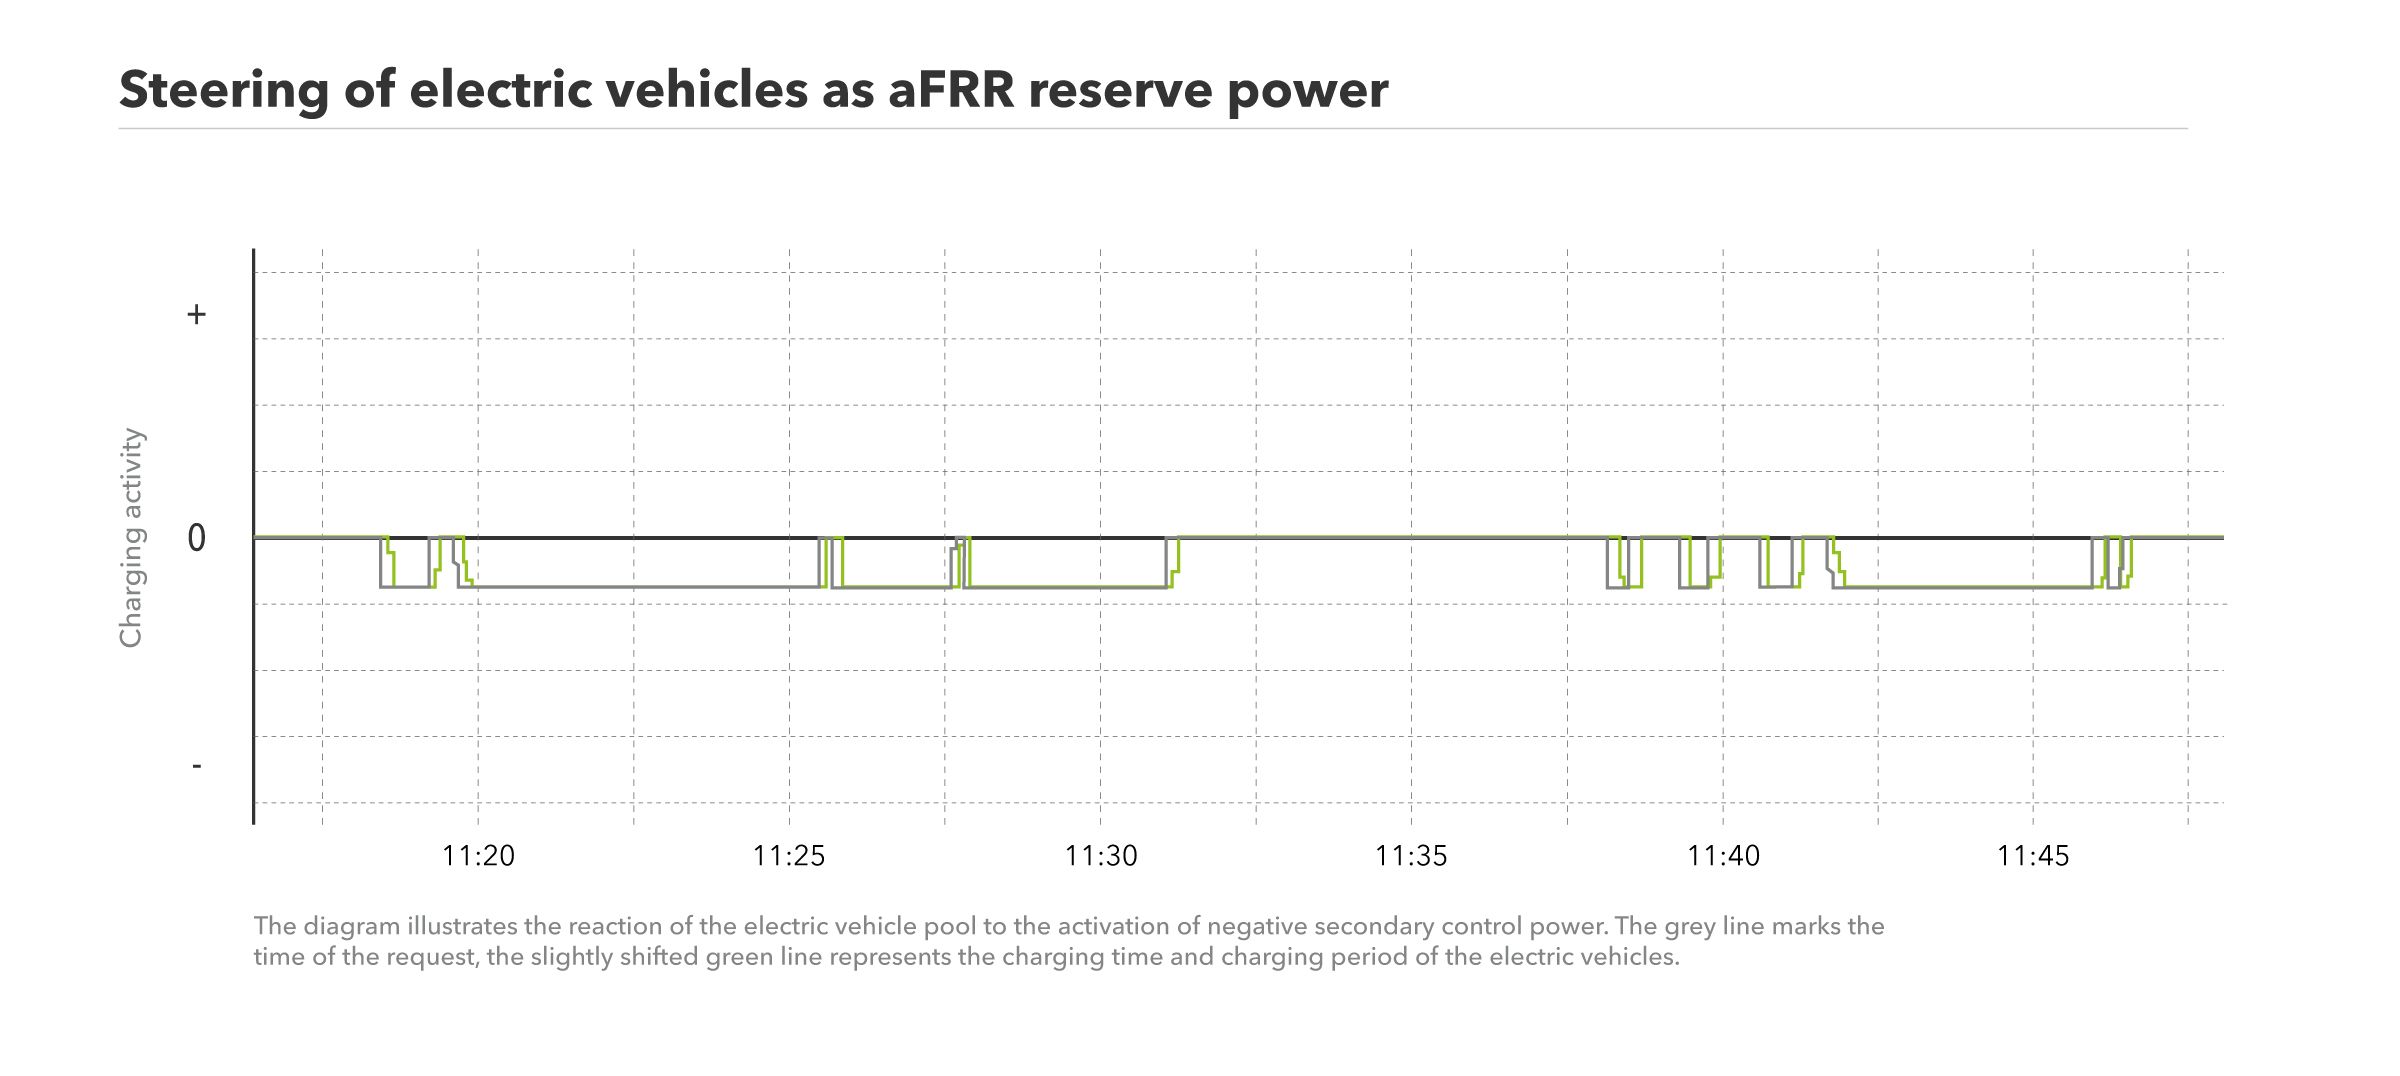 该图显示了电动汽车的转向作为aFRR备用功率。